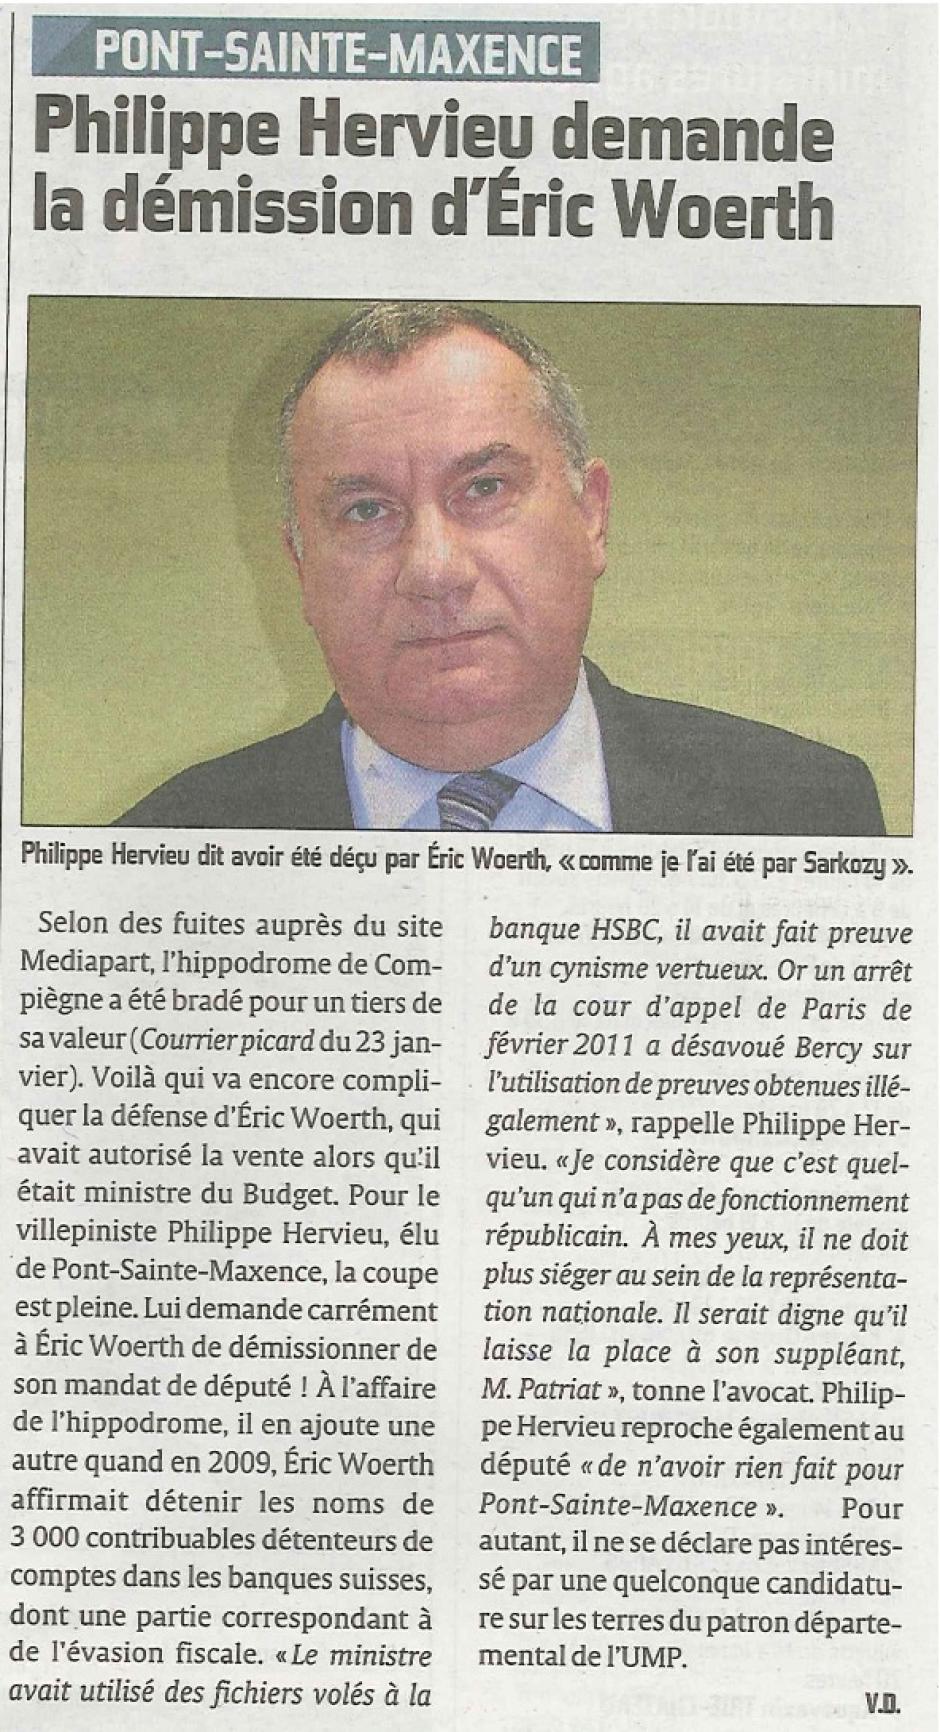 20120126-CP-Pont-Sainte-Maxence-Philippe Hervieu demande la démission d'Éric Woerth